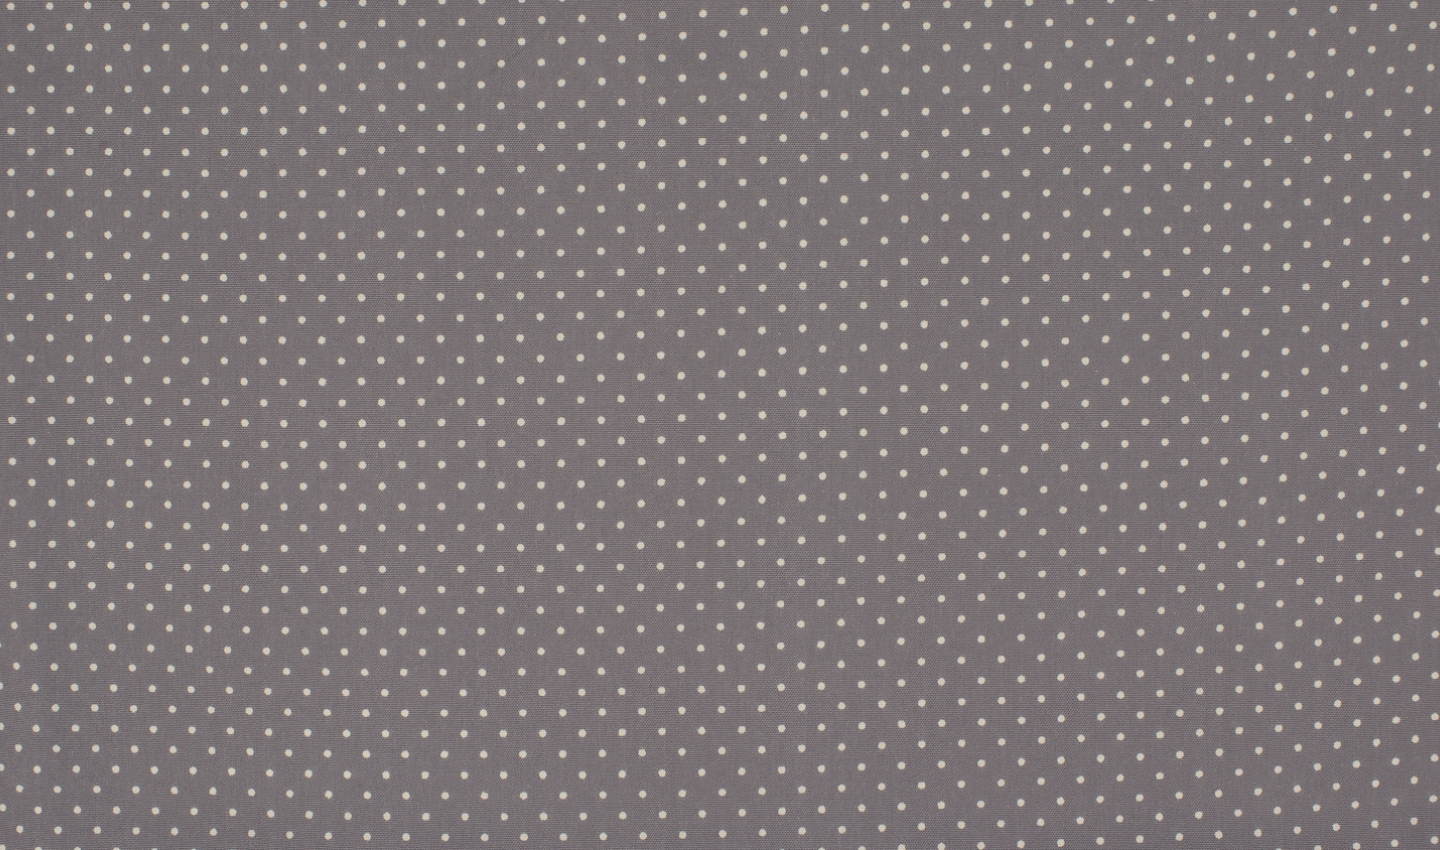 73196001200 Baumwolle Stoff Punkte Dots grau weiss weiß